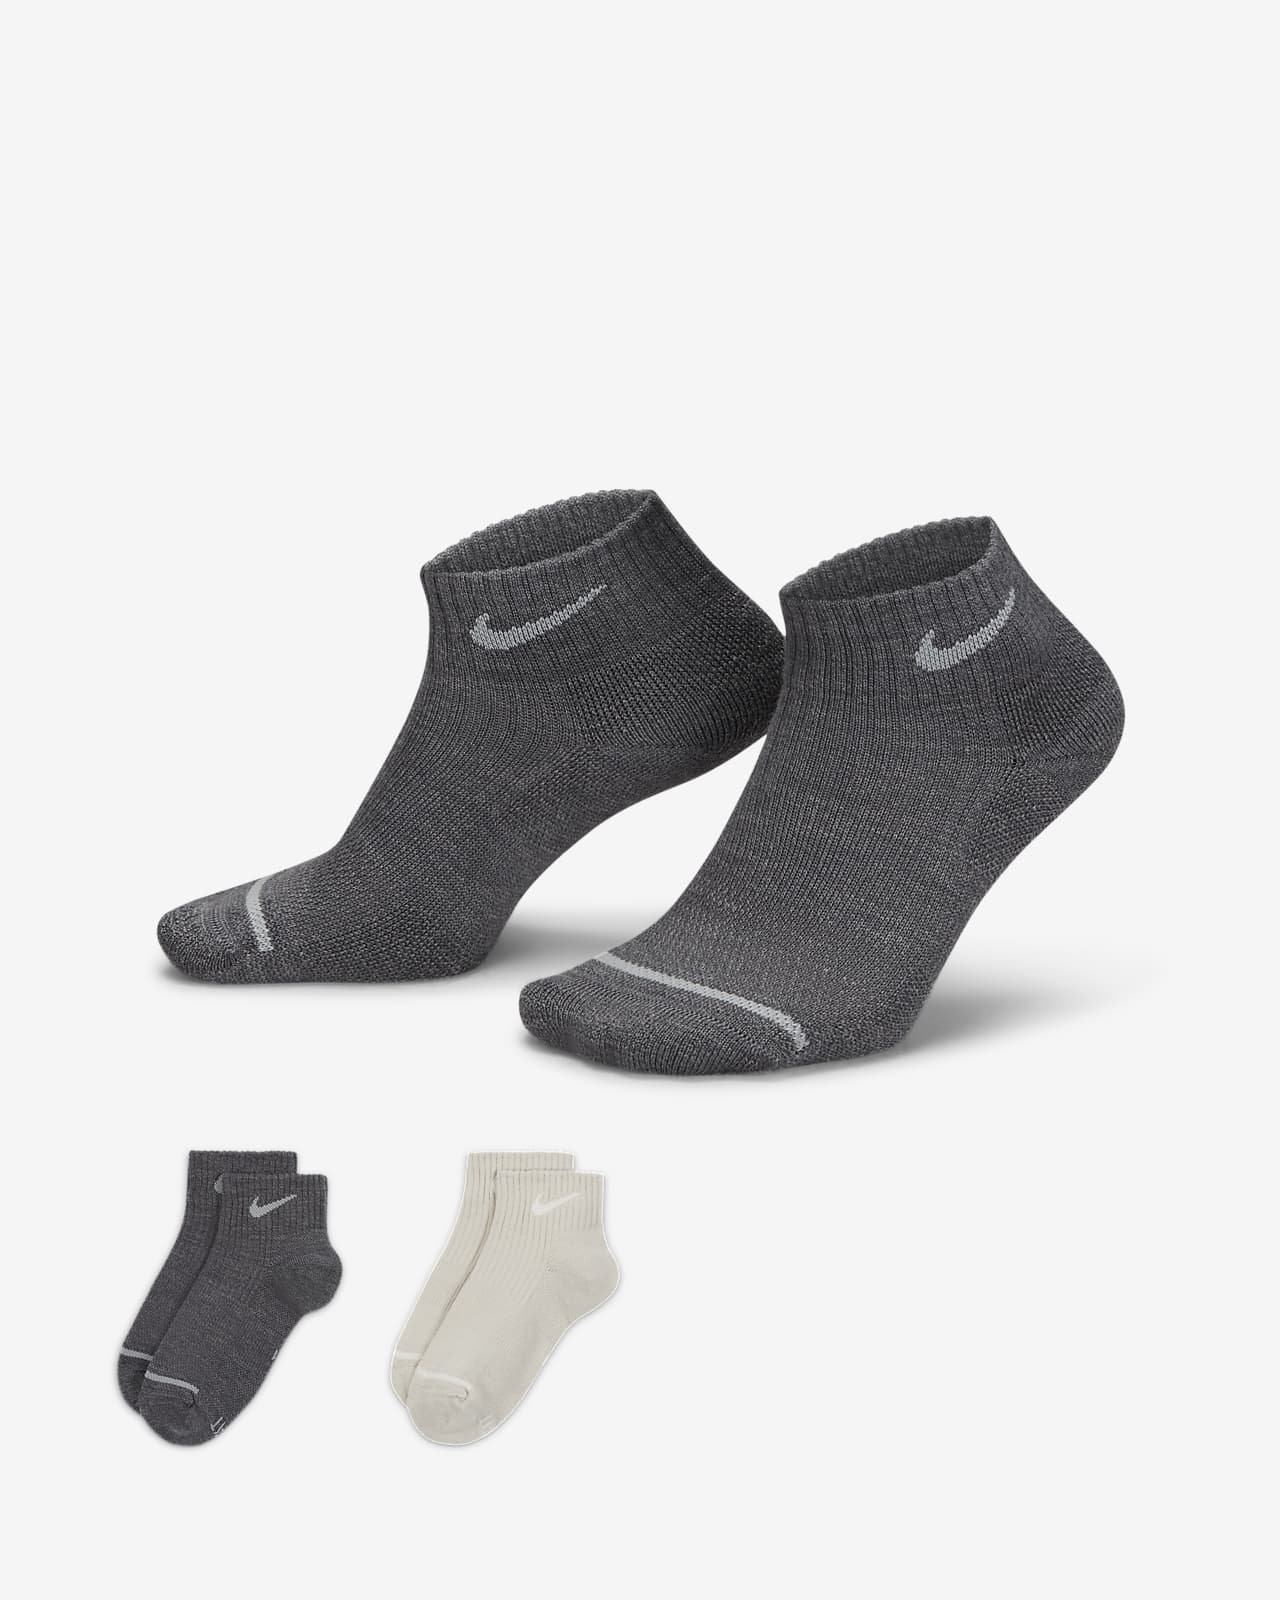 Meias pelo tornozelo com amortecimento Nike Everyday Wool (2 pares)